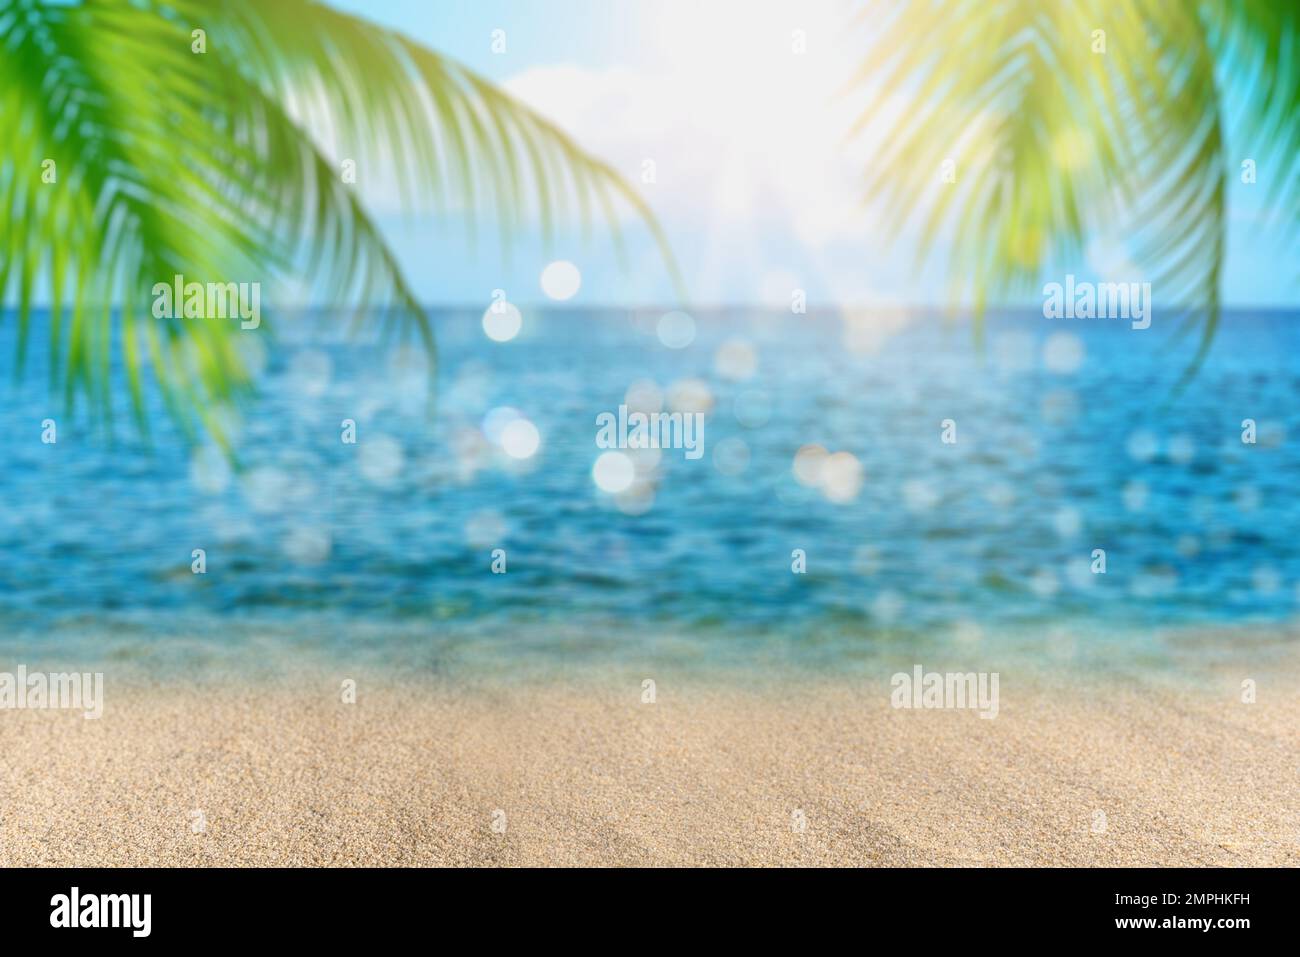 Verwischen Sie wunderschöne grüne Palmenblätter am tropischen Strand, abstrakter Hintergrund. Kopierraumkonzept für Sommerurlaub und Geschäftsreise. Stockfoto